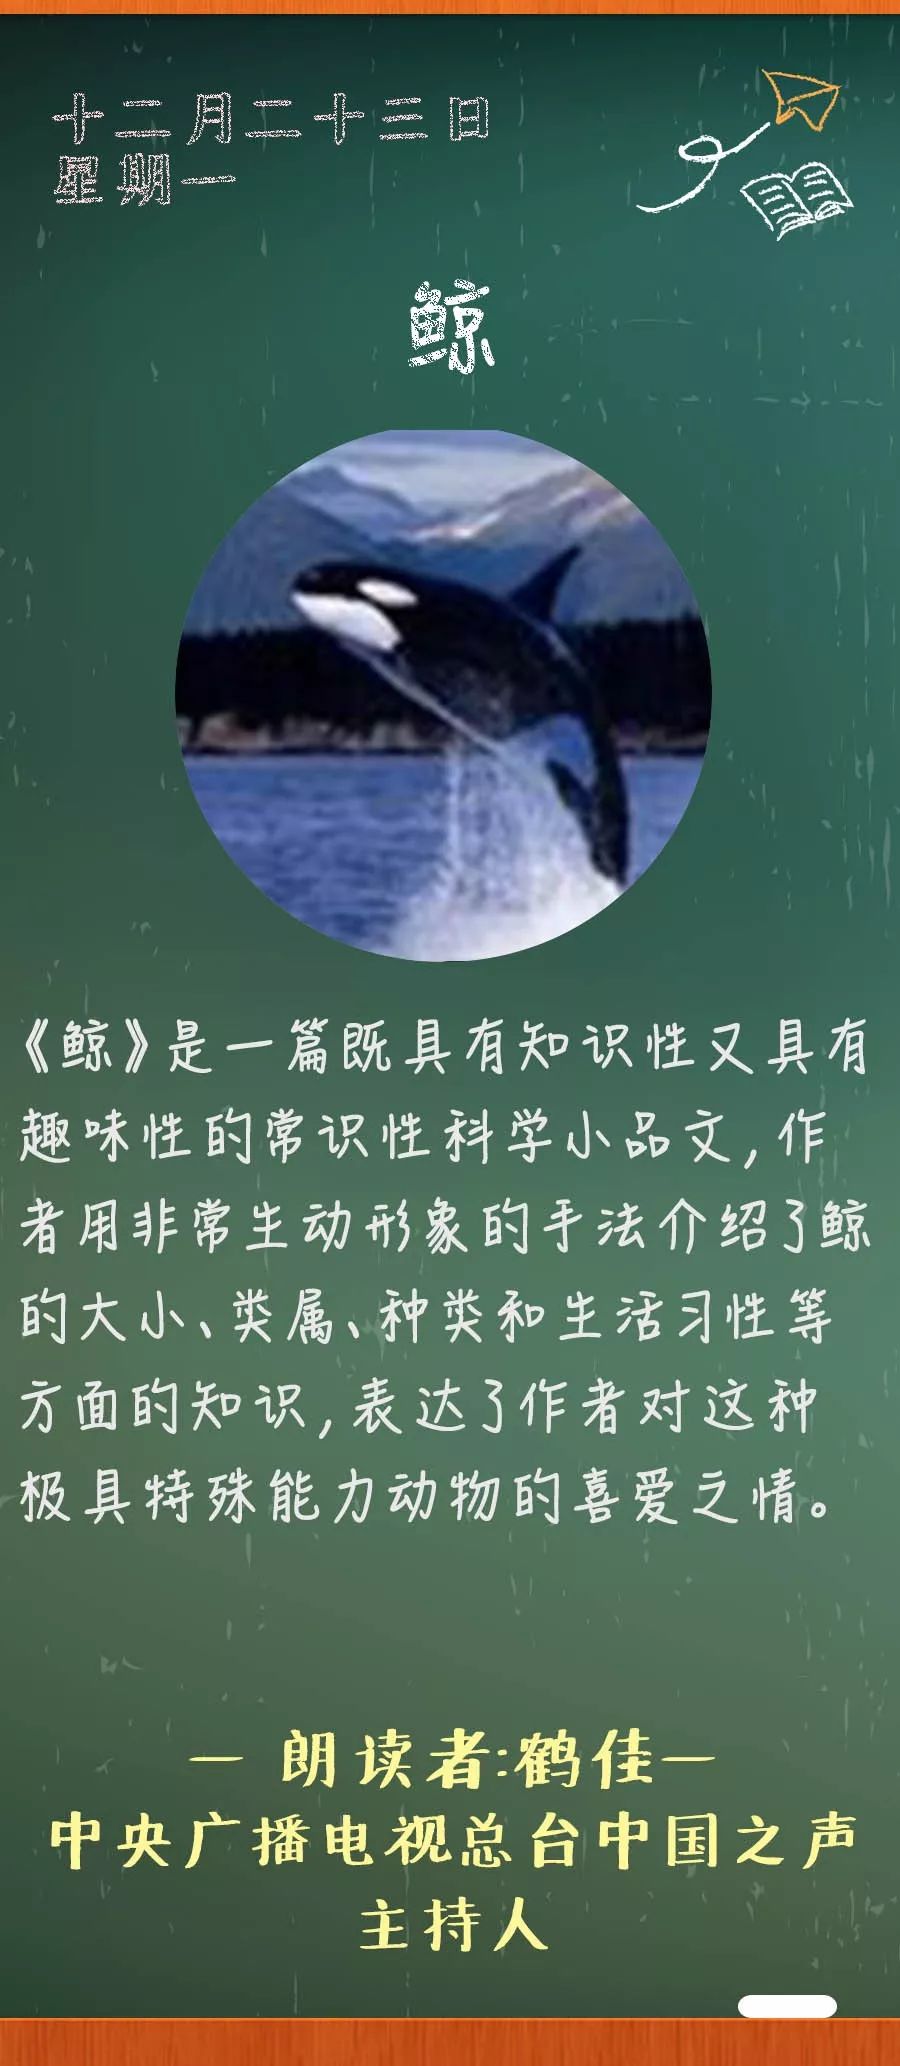 鲸原文图片